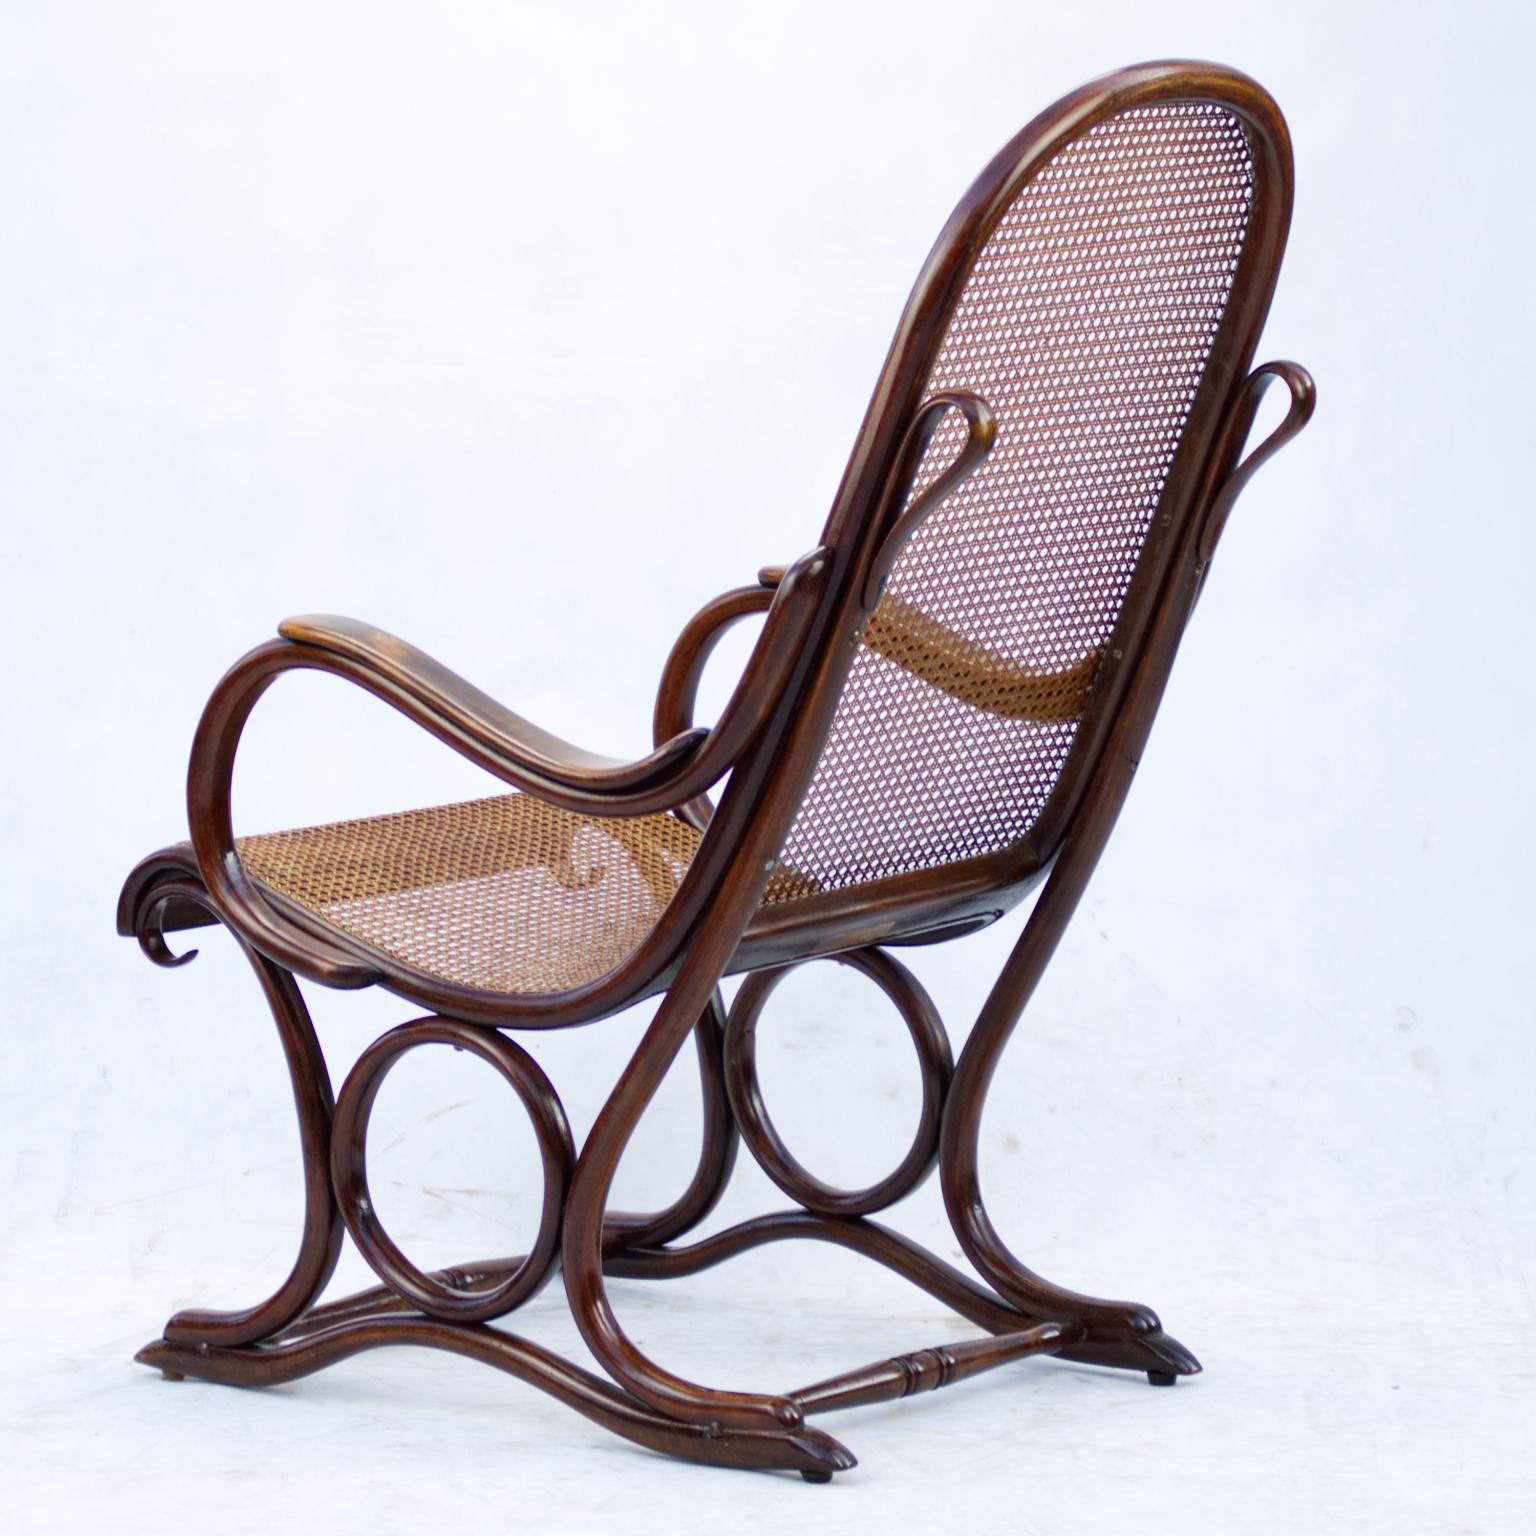 Art Nouveau Bentwood Cane Salonfauteuil Easy Chair Thonet No. 1, circa 1890 For Sale